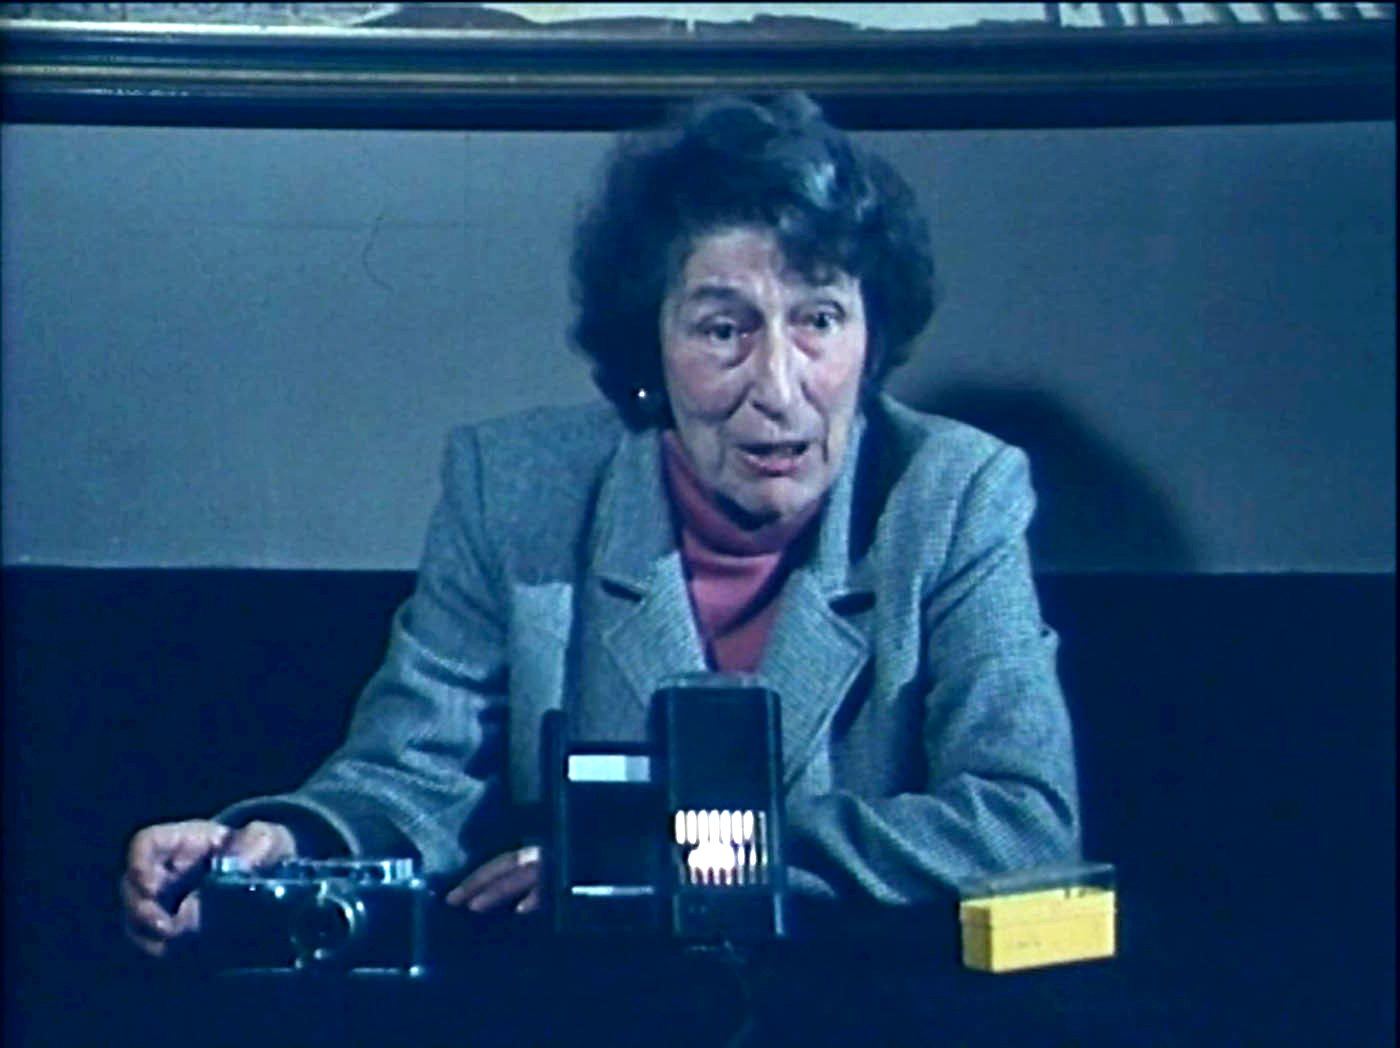 Photogramme de Photographie et société, d’après Gisèle Freund, de Teri Wehn-Damisch, 1983 (2x24 minutes)